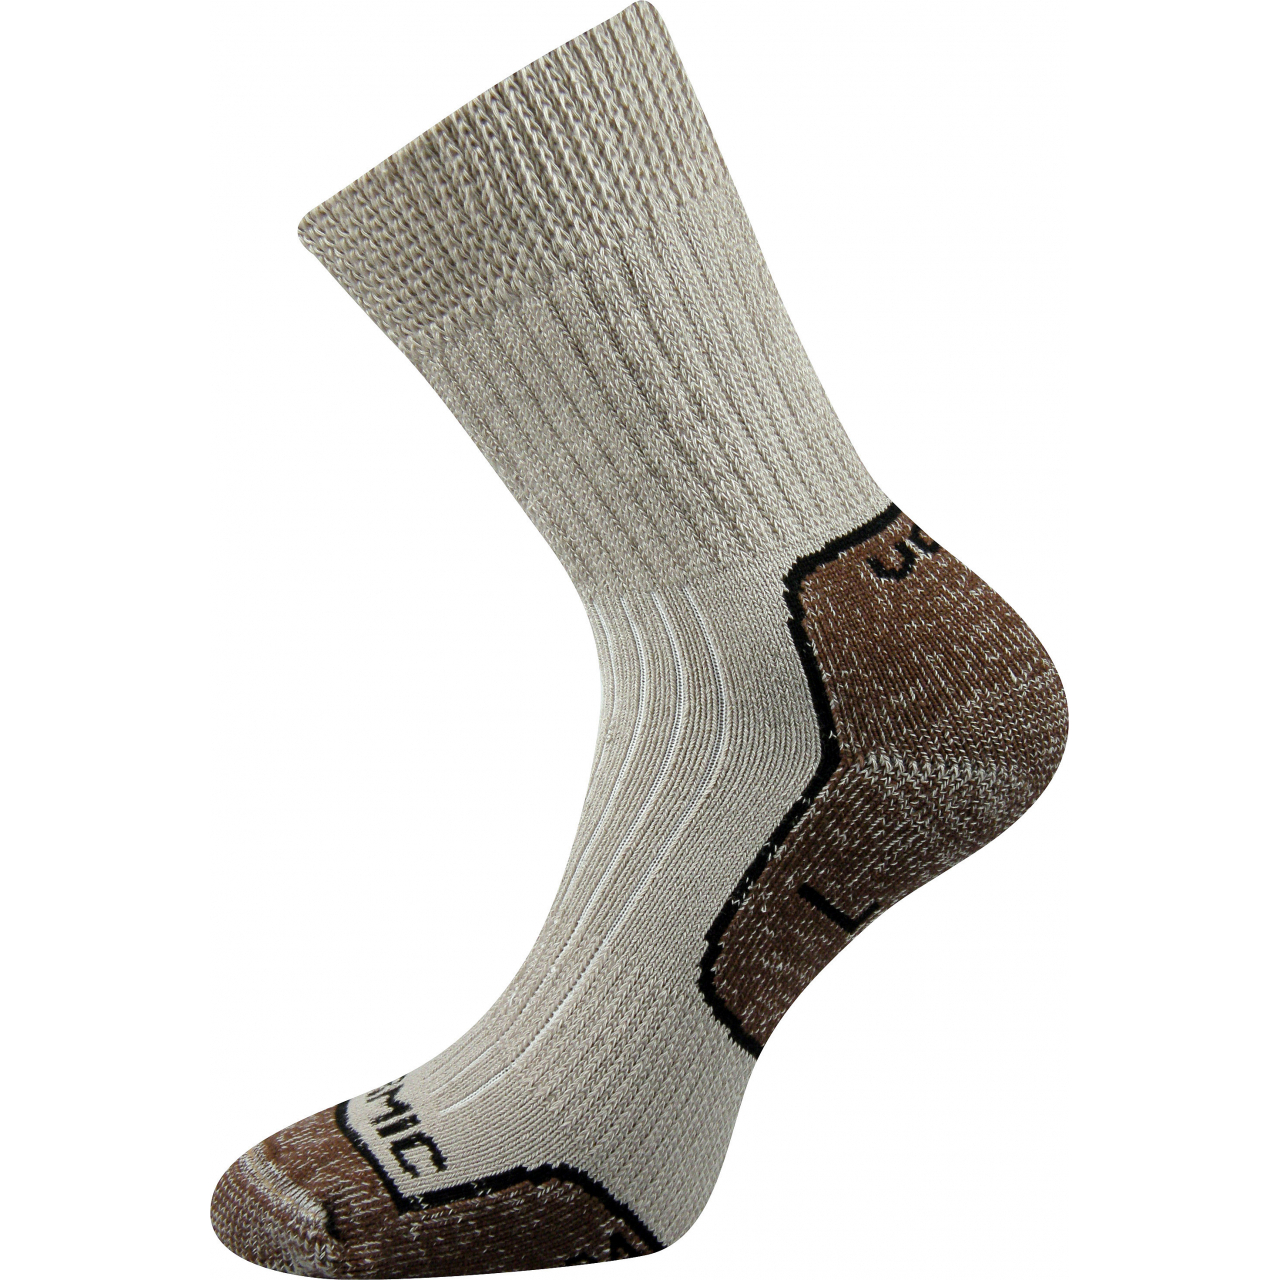 Ponožky unisex termo Voxx Zenith L + P - béžové-hnědé, 38-39